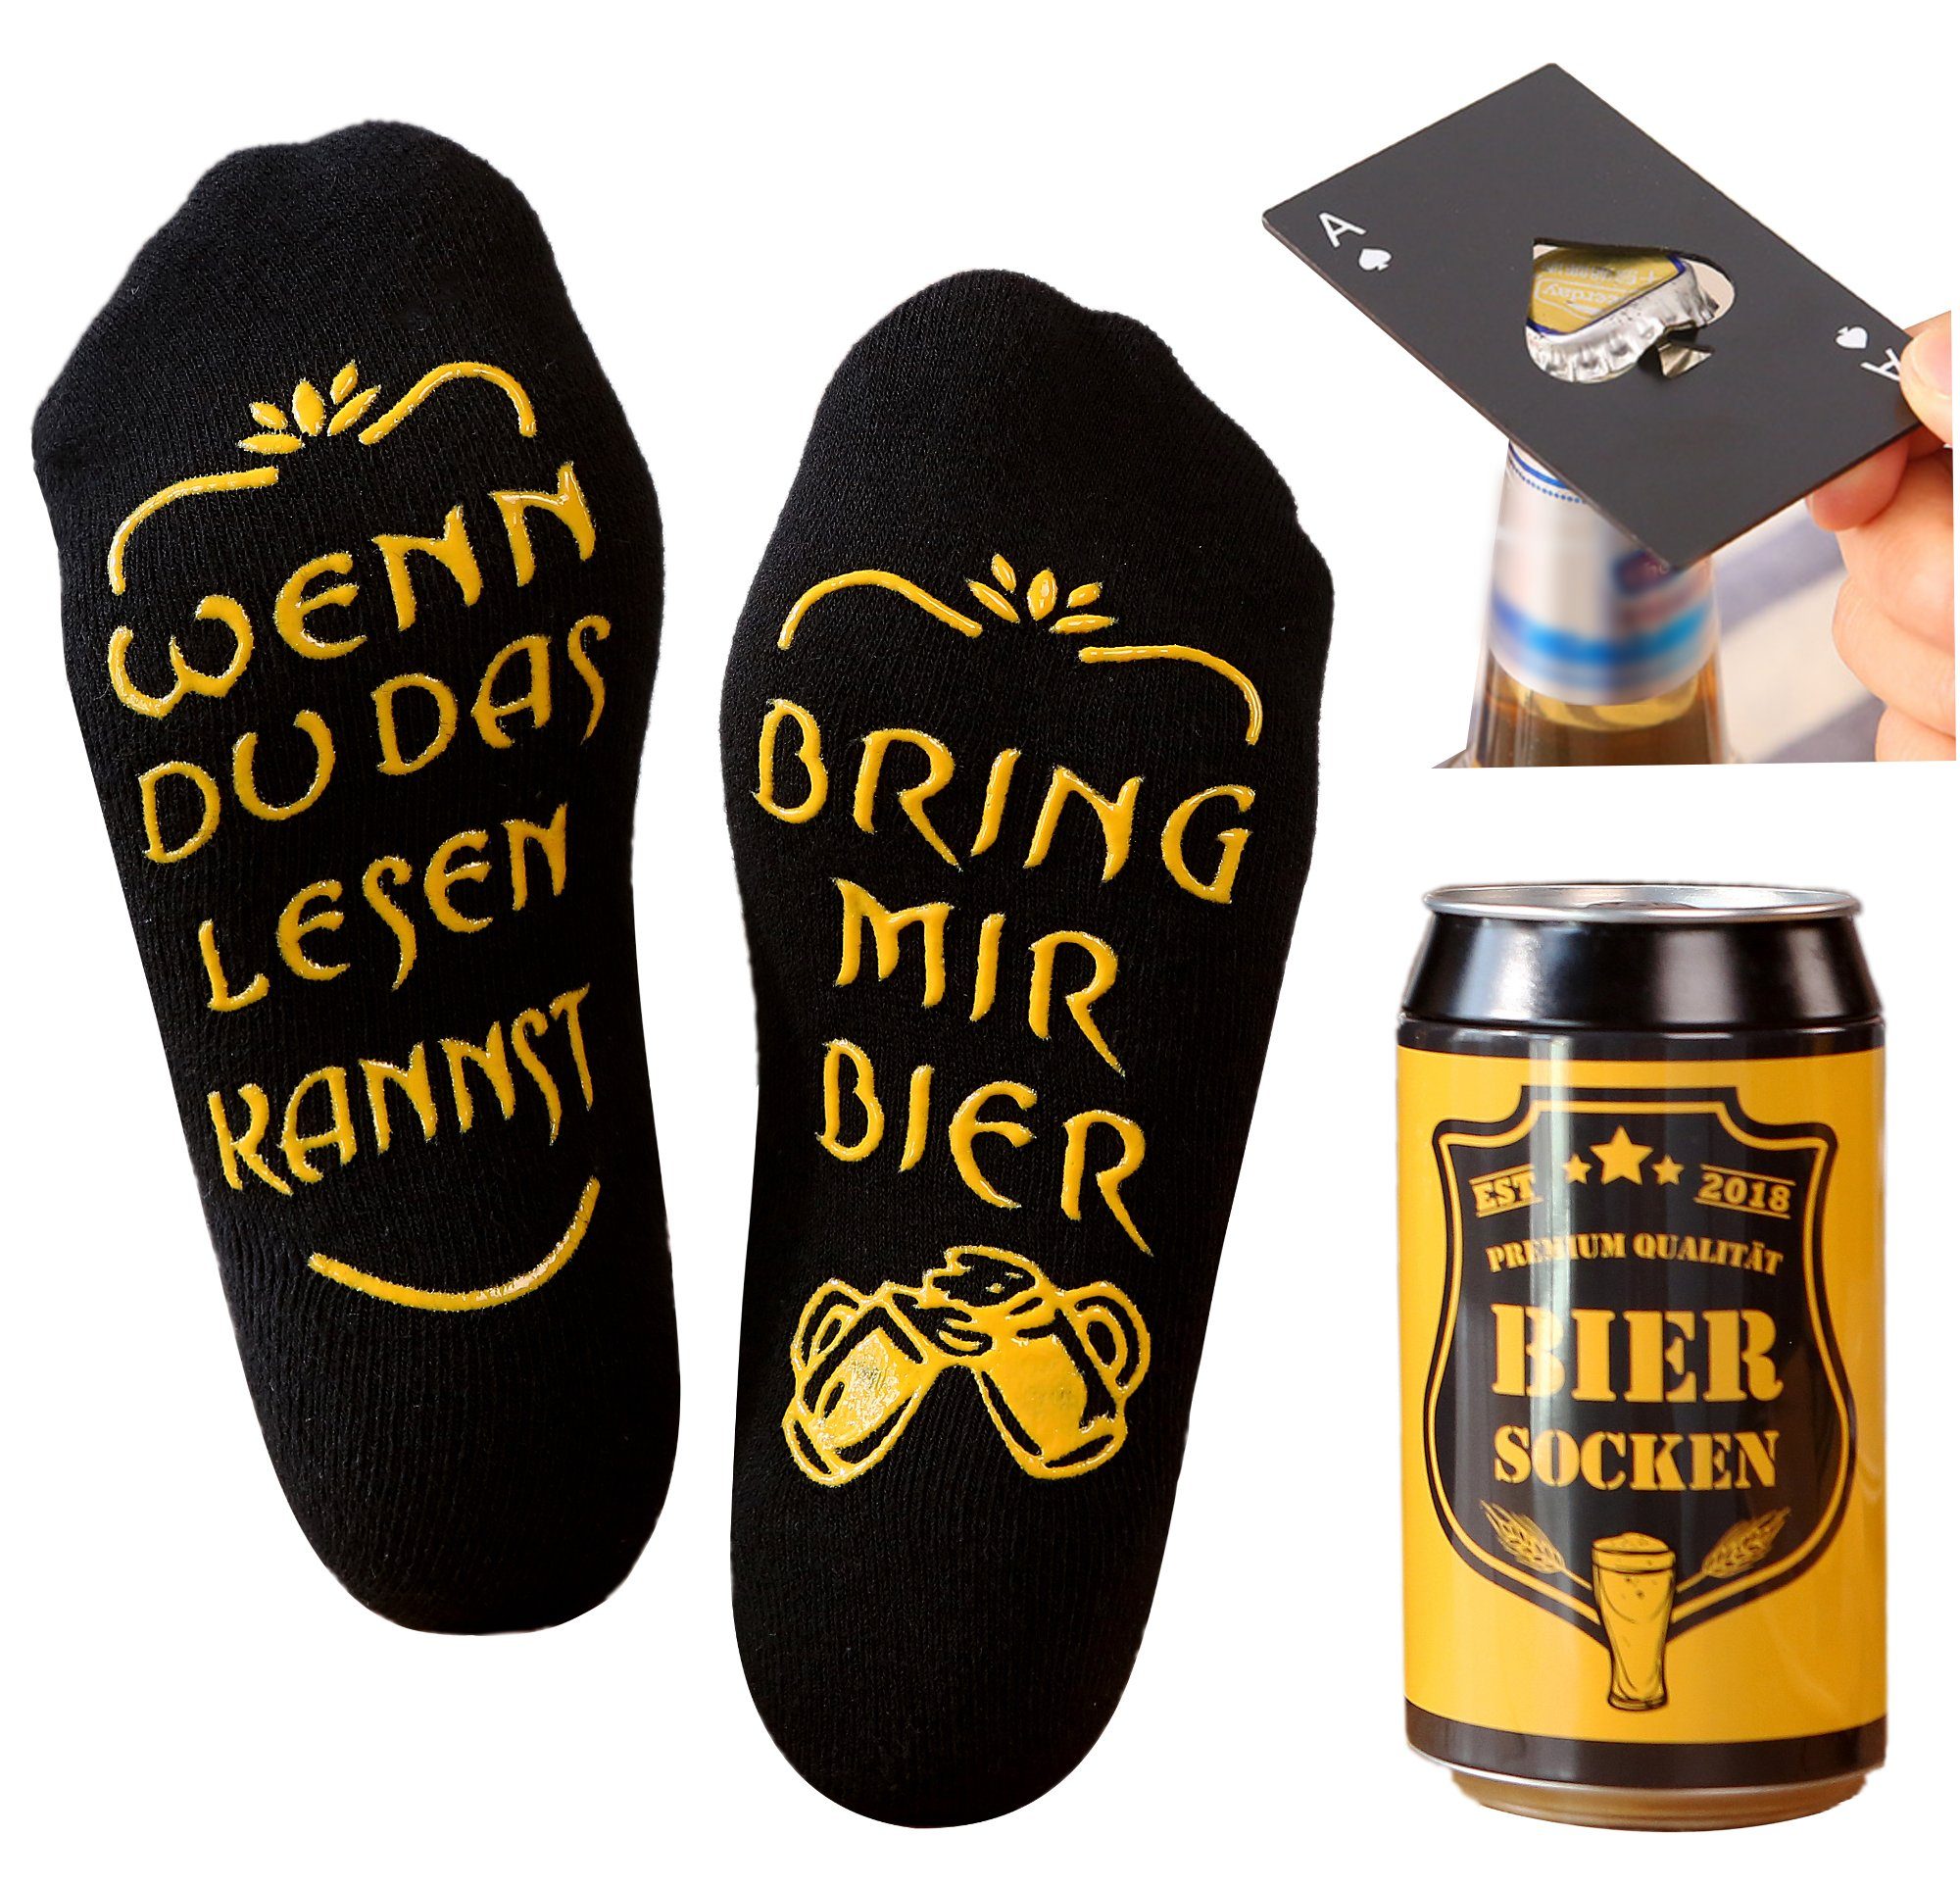 Lucadeau Socken Bier Socken mit Spruch und Edelstahl Flaschenöffner, bring mir Bier (Dose, 1 Paar) rutschfest, Gr. 38-44, Geschenke für Männer, Geburtstagsgeschenk Schwarz+Pikass schwarz